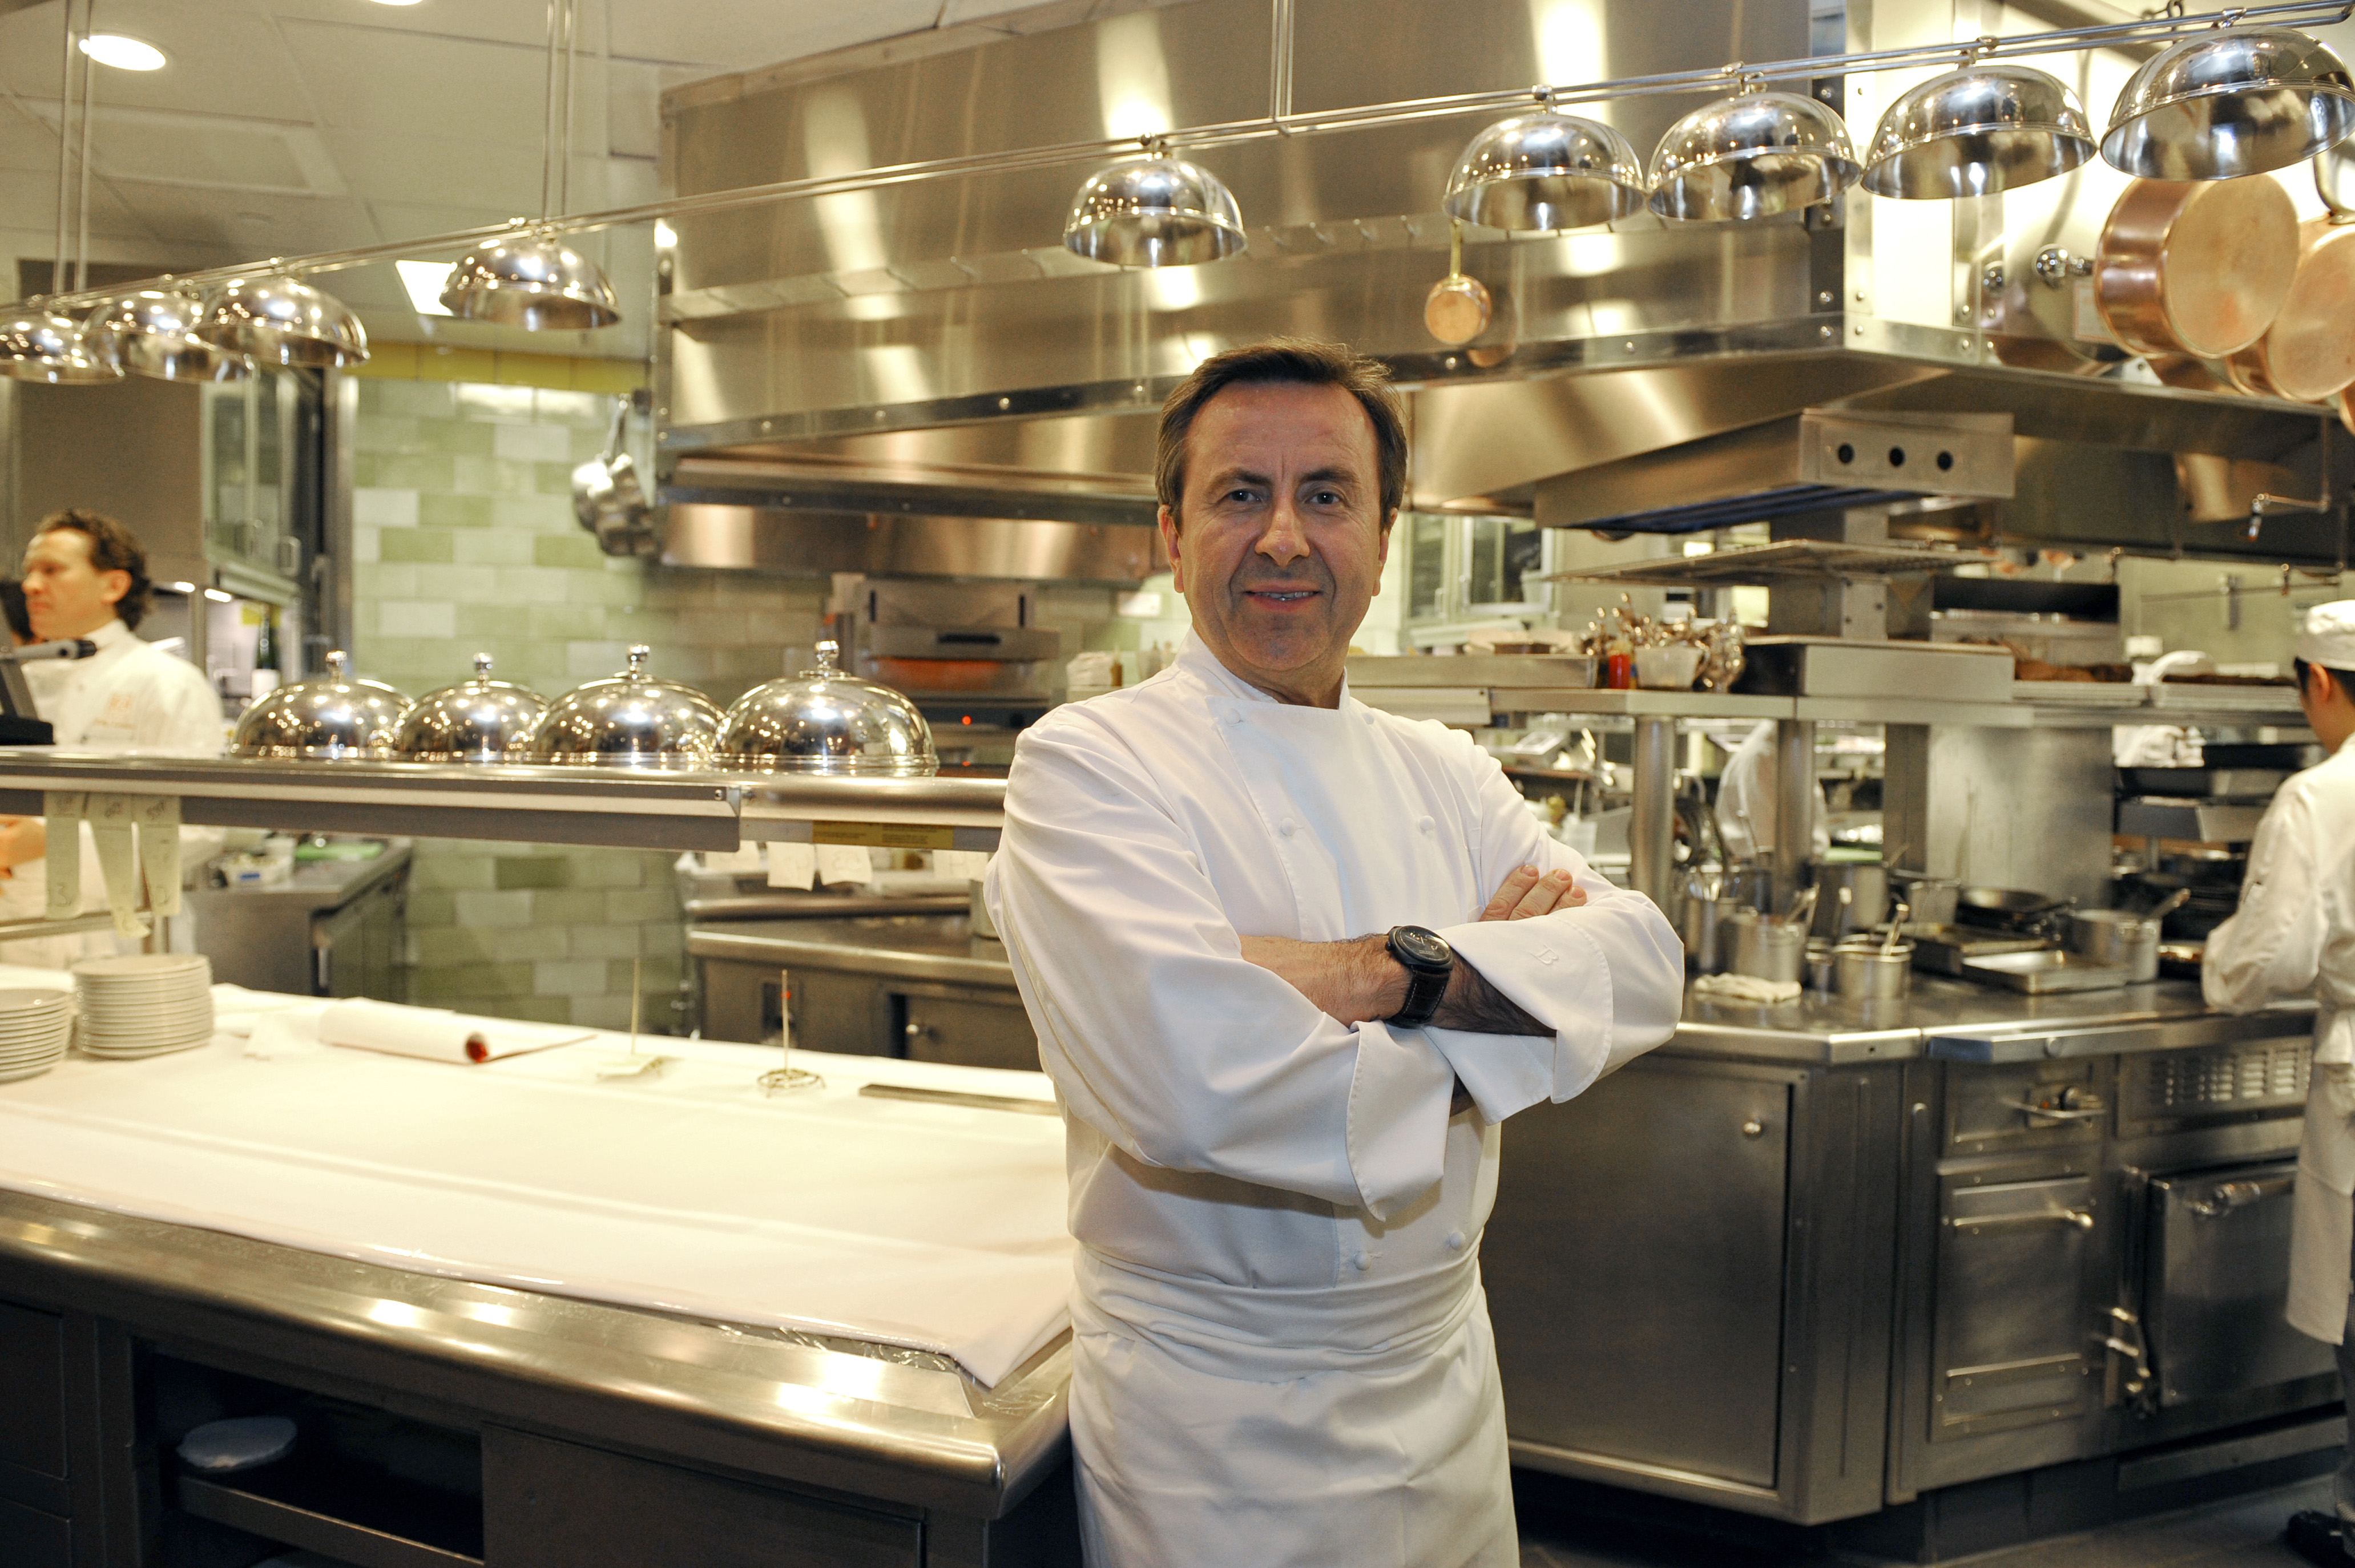 French chef Daniel Boulud  